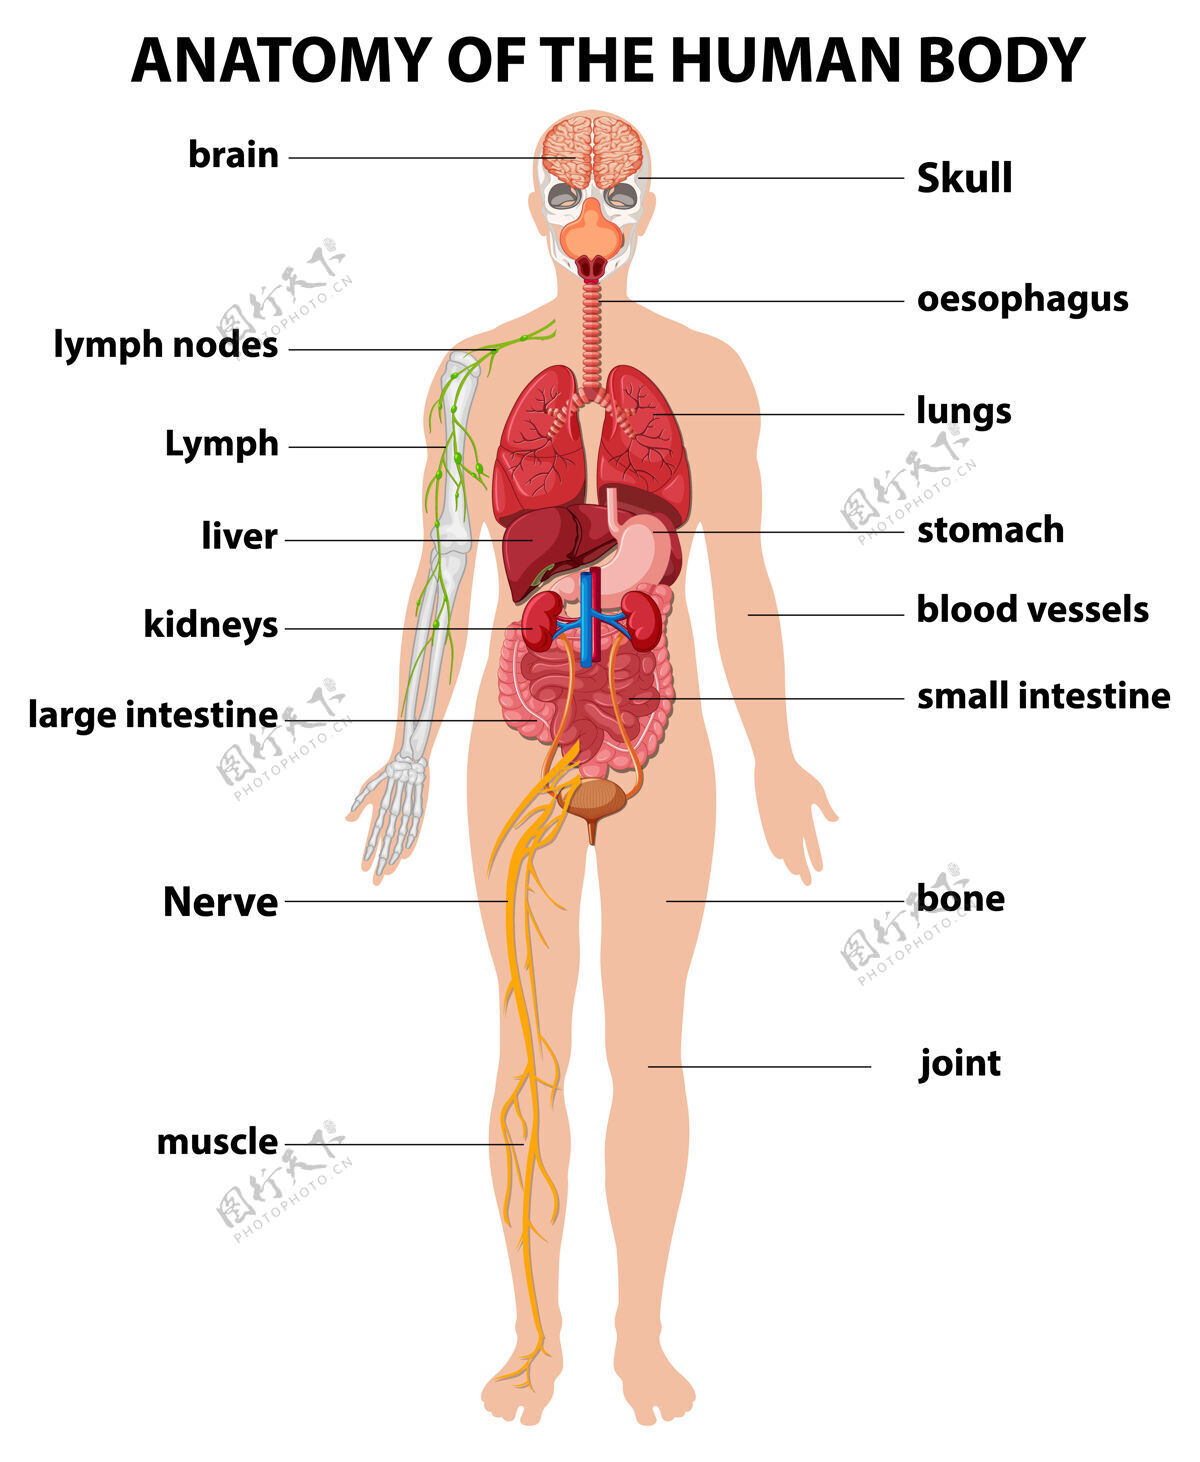 胃人体解剖学信息图解剖学物理关节